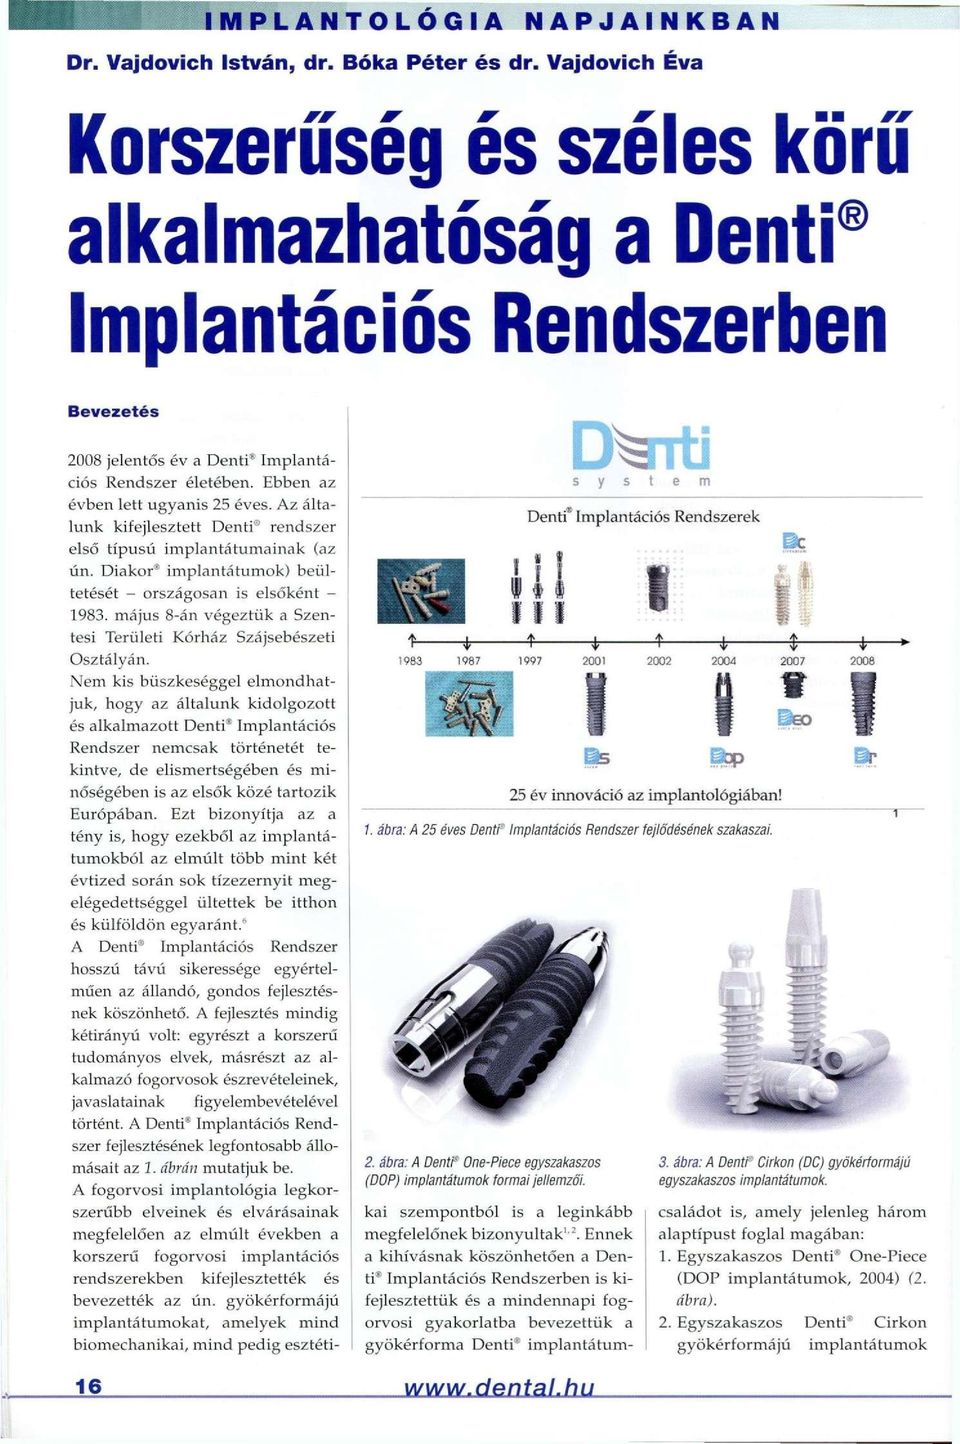 Az általunk kifejlesztett Denti rendszer első típusú implantátumainak (az ún. Diakor implantátumok) beültetését - országosan is elsőként - 1983.